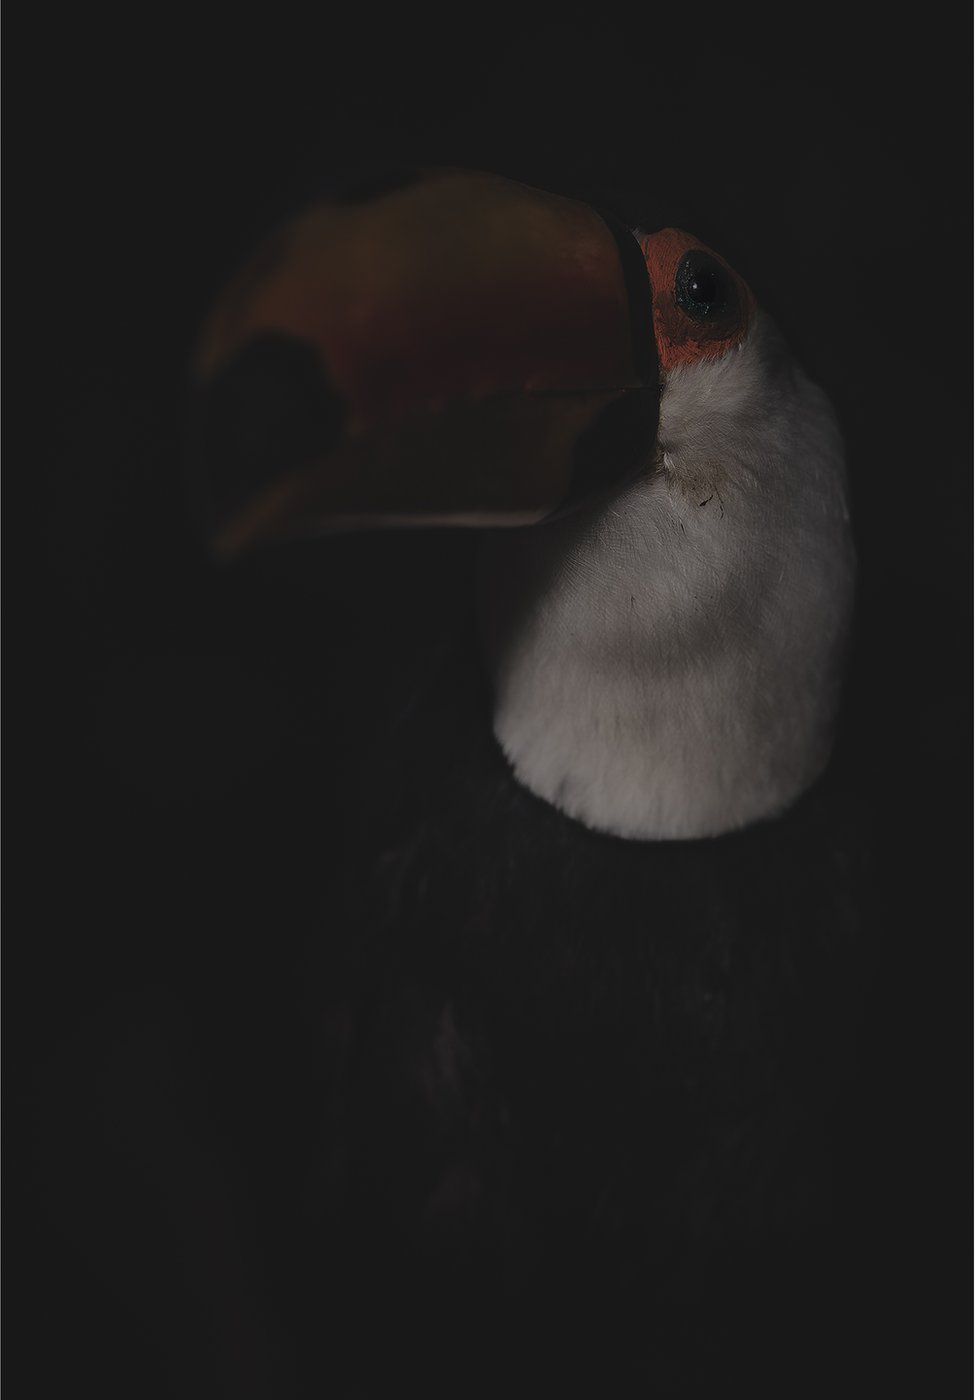 A stuffed dead toucan bird